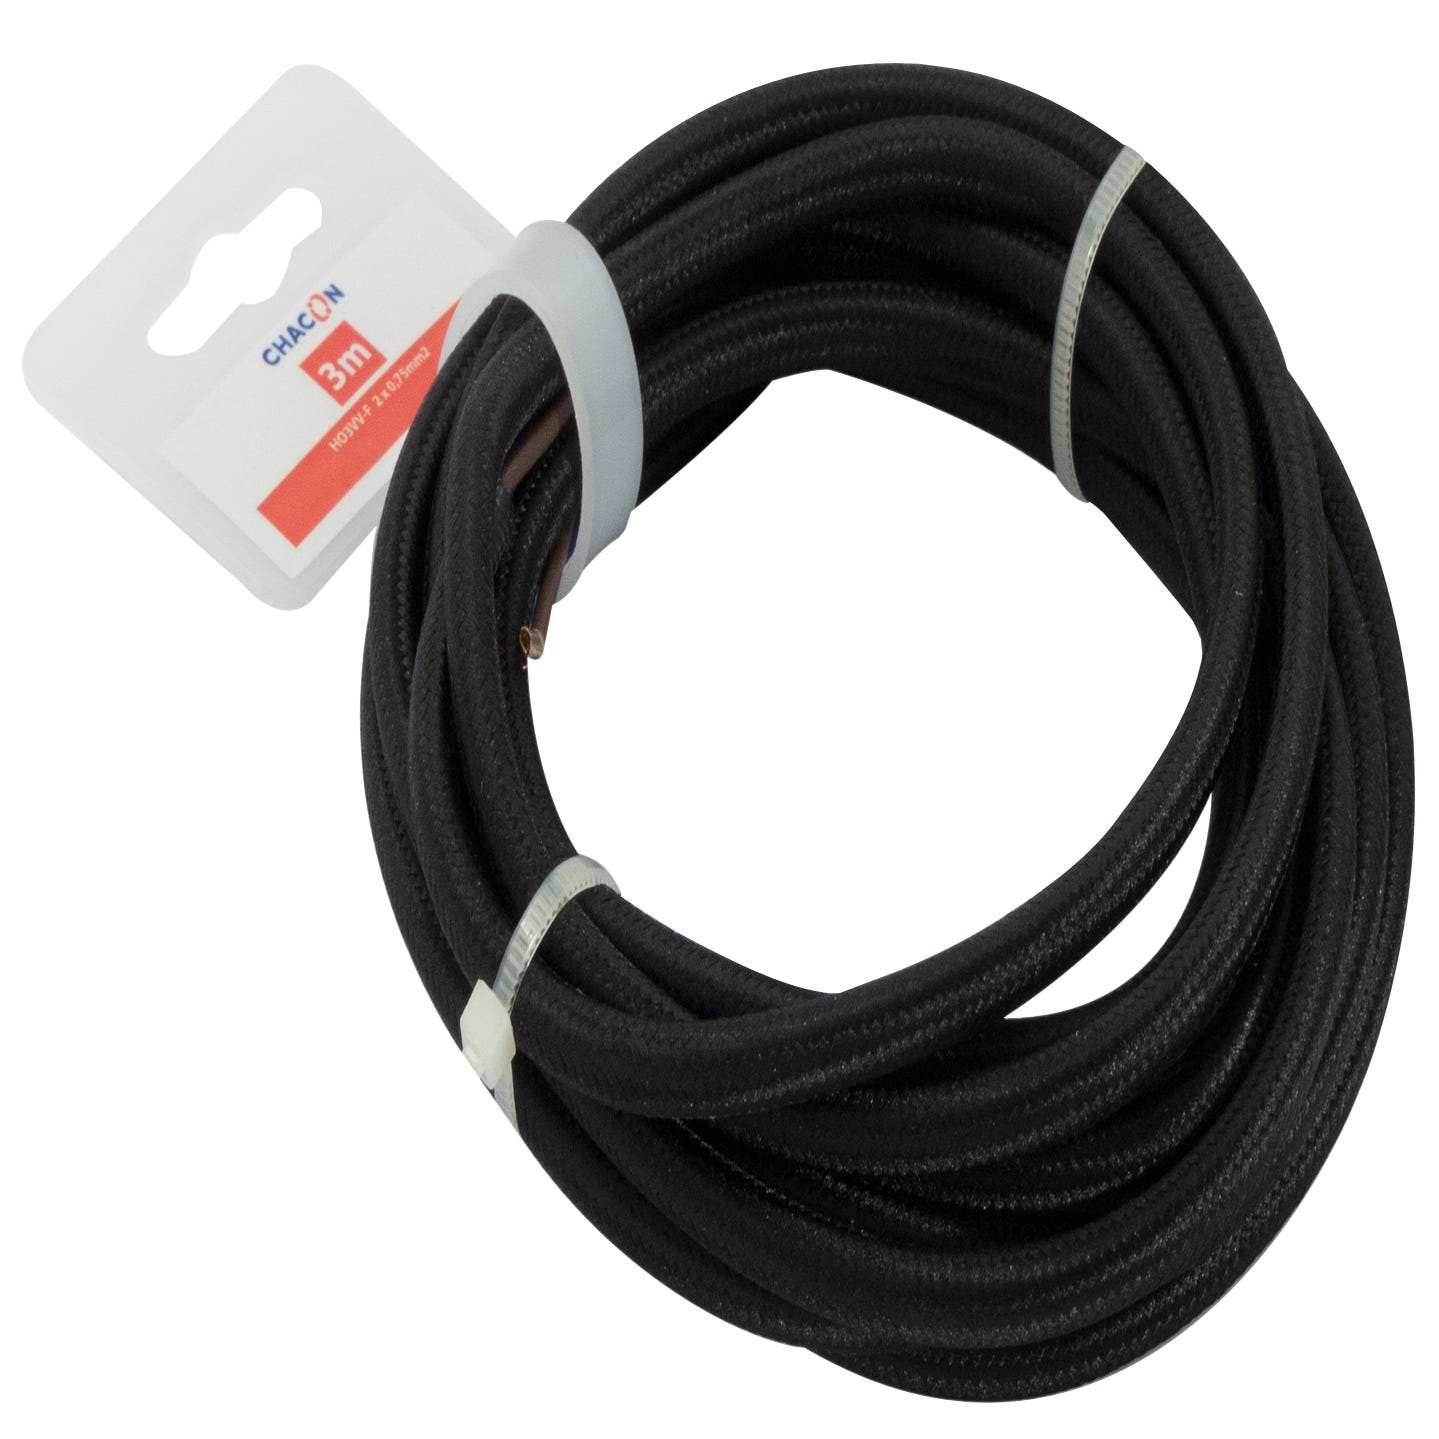 Cabel de plástico 3m negro H03VVH2-F 2x0,75